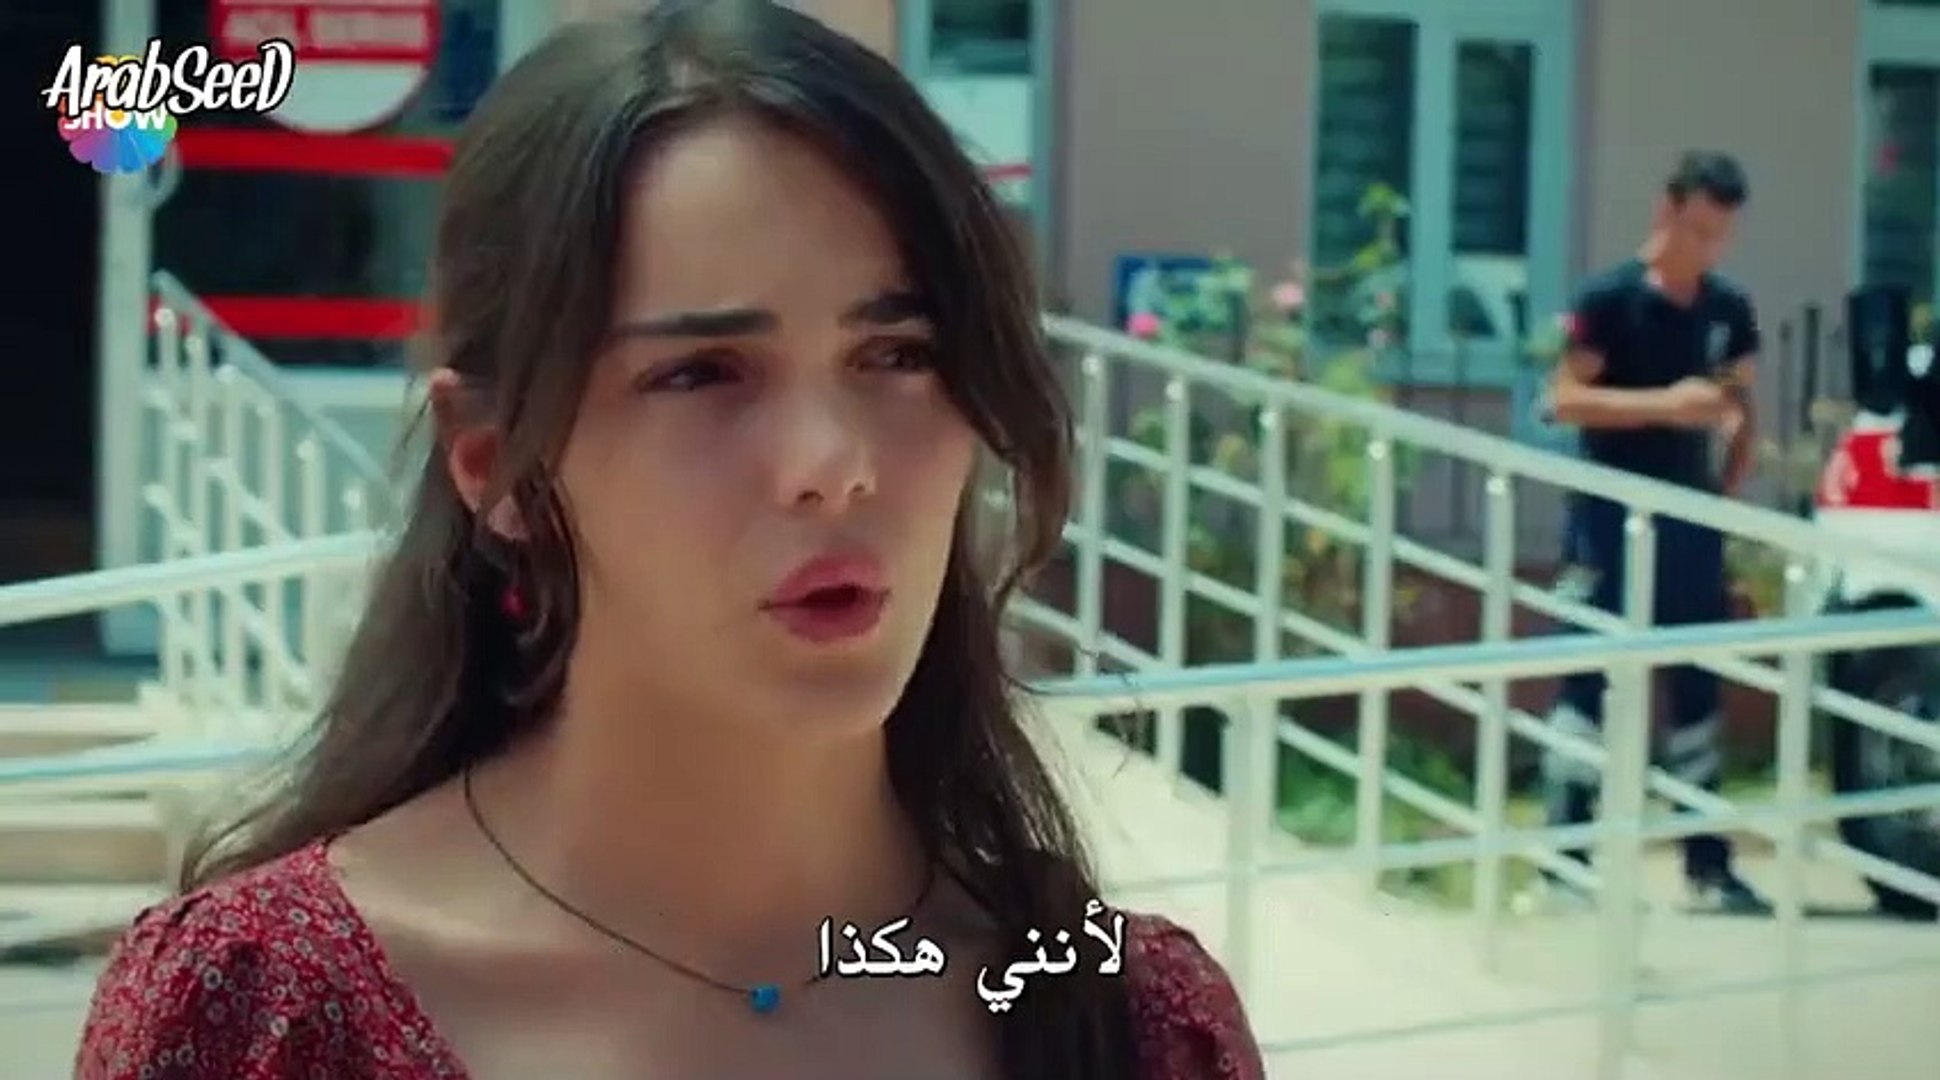 مسلسل الحب يجعلنا نبكي الحلقة 1 جزء 3 مترجم للعربية فيديو Dailymotion